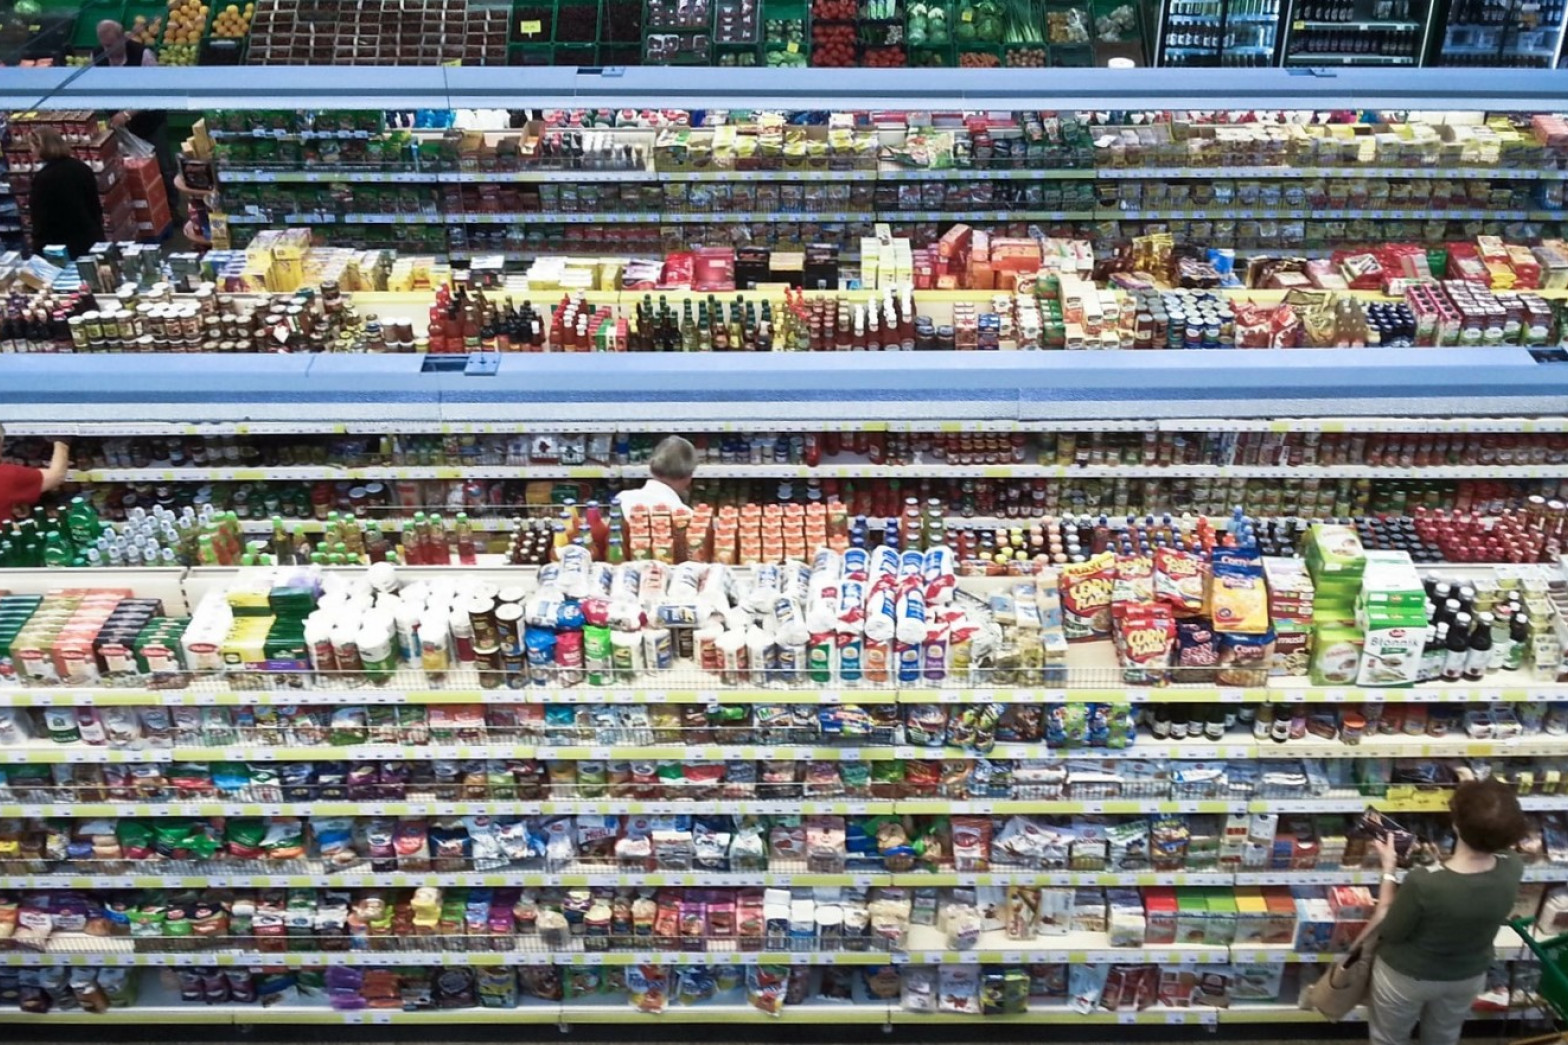 Butikshylder i polsk supermarked med masser af konventionelle fødevarer